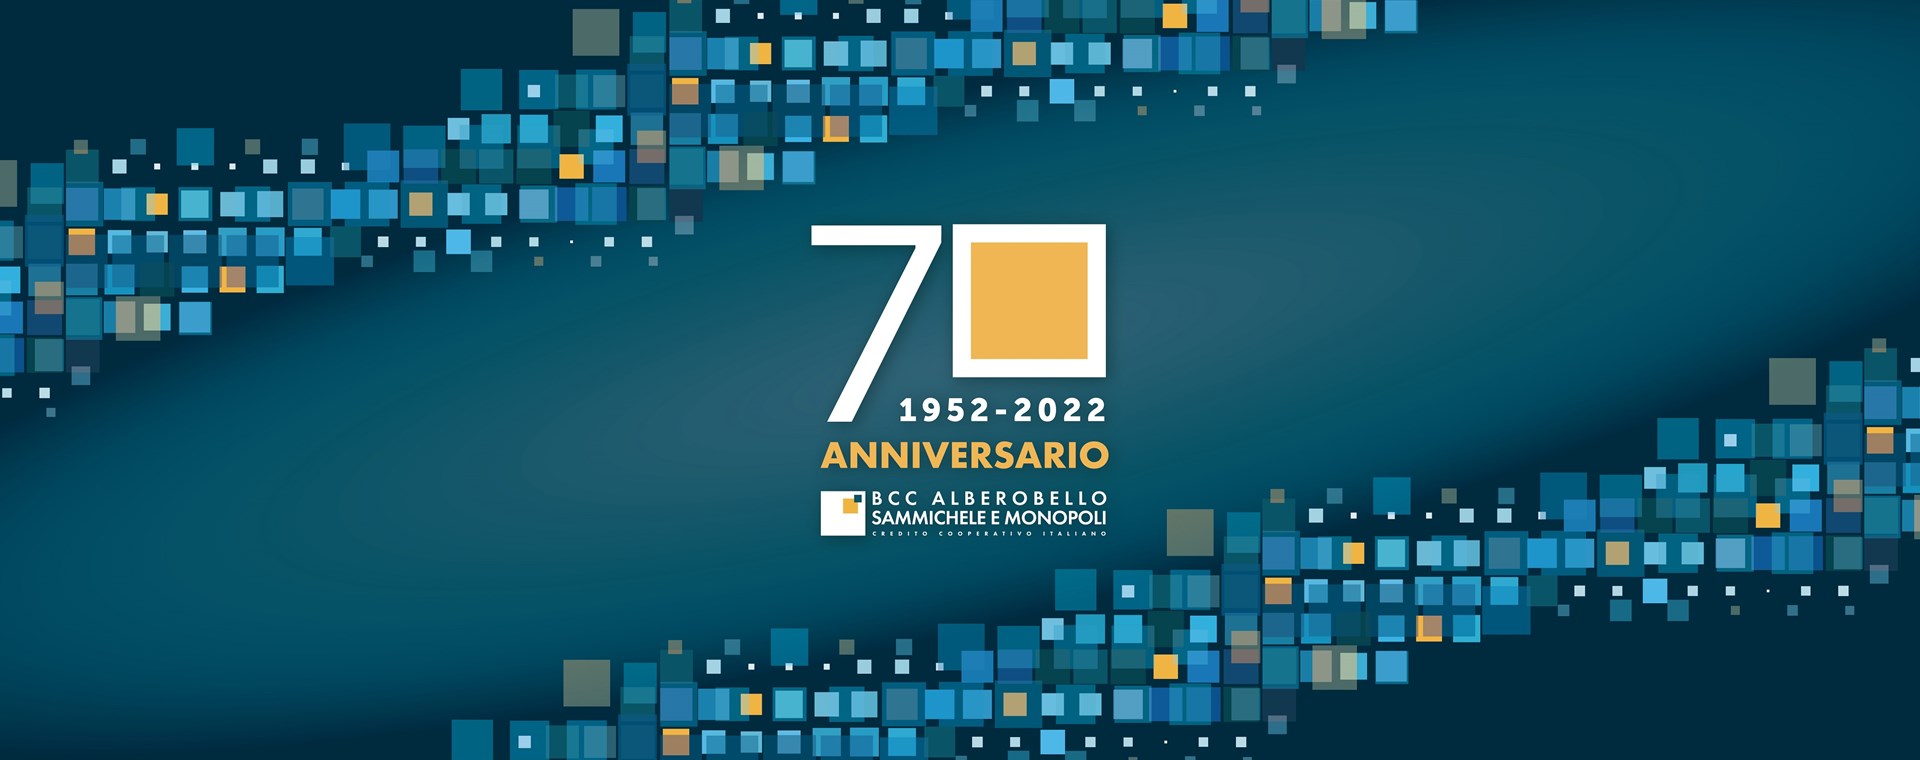 Settantesimo anniversario della Bcc di Alberobello, Sammichele e Monopoli 